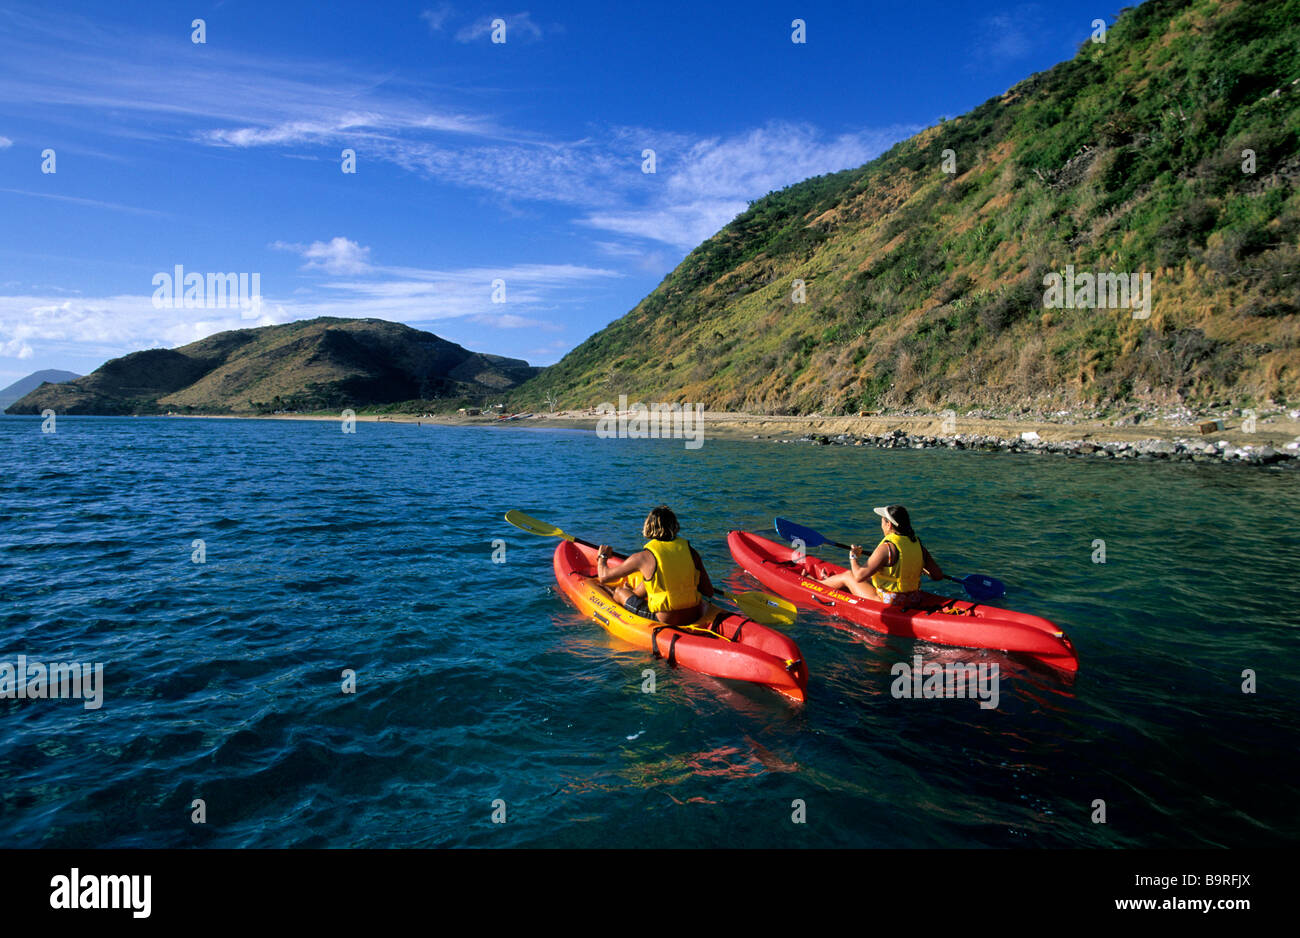 Saint Kitts and Nevis (British West Indies), Saint Kitts Island, sea kayaks Stock Photo